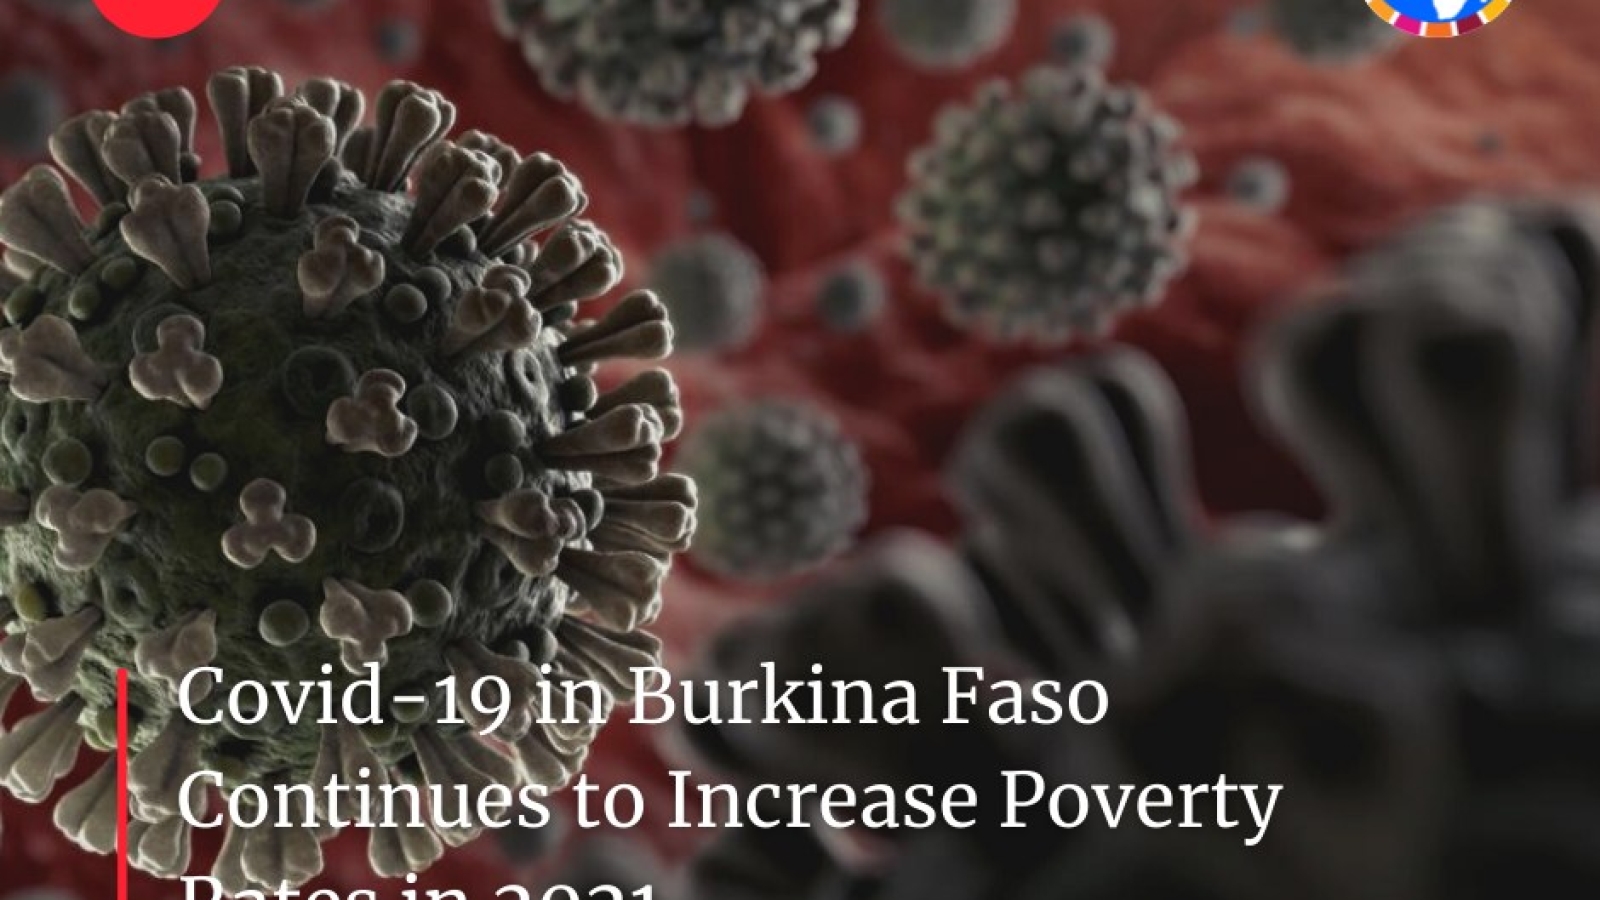 Le Covid-19 au Burkina Faso continue d’augmenter les taux de pauvreté en 2021